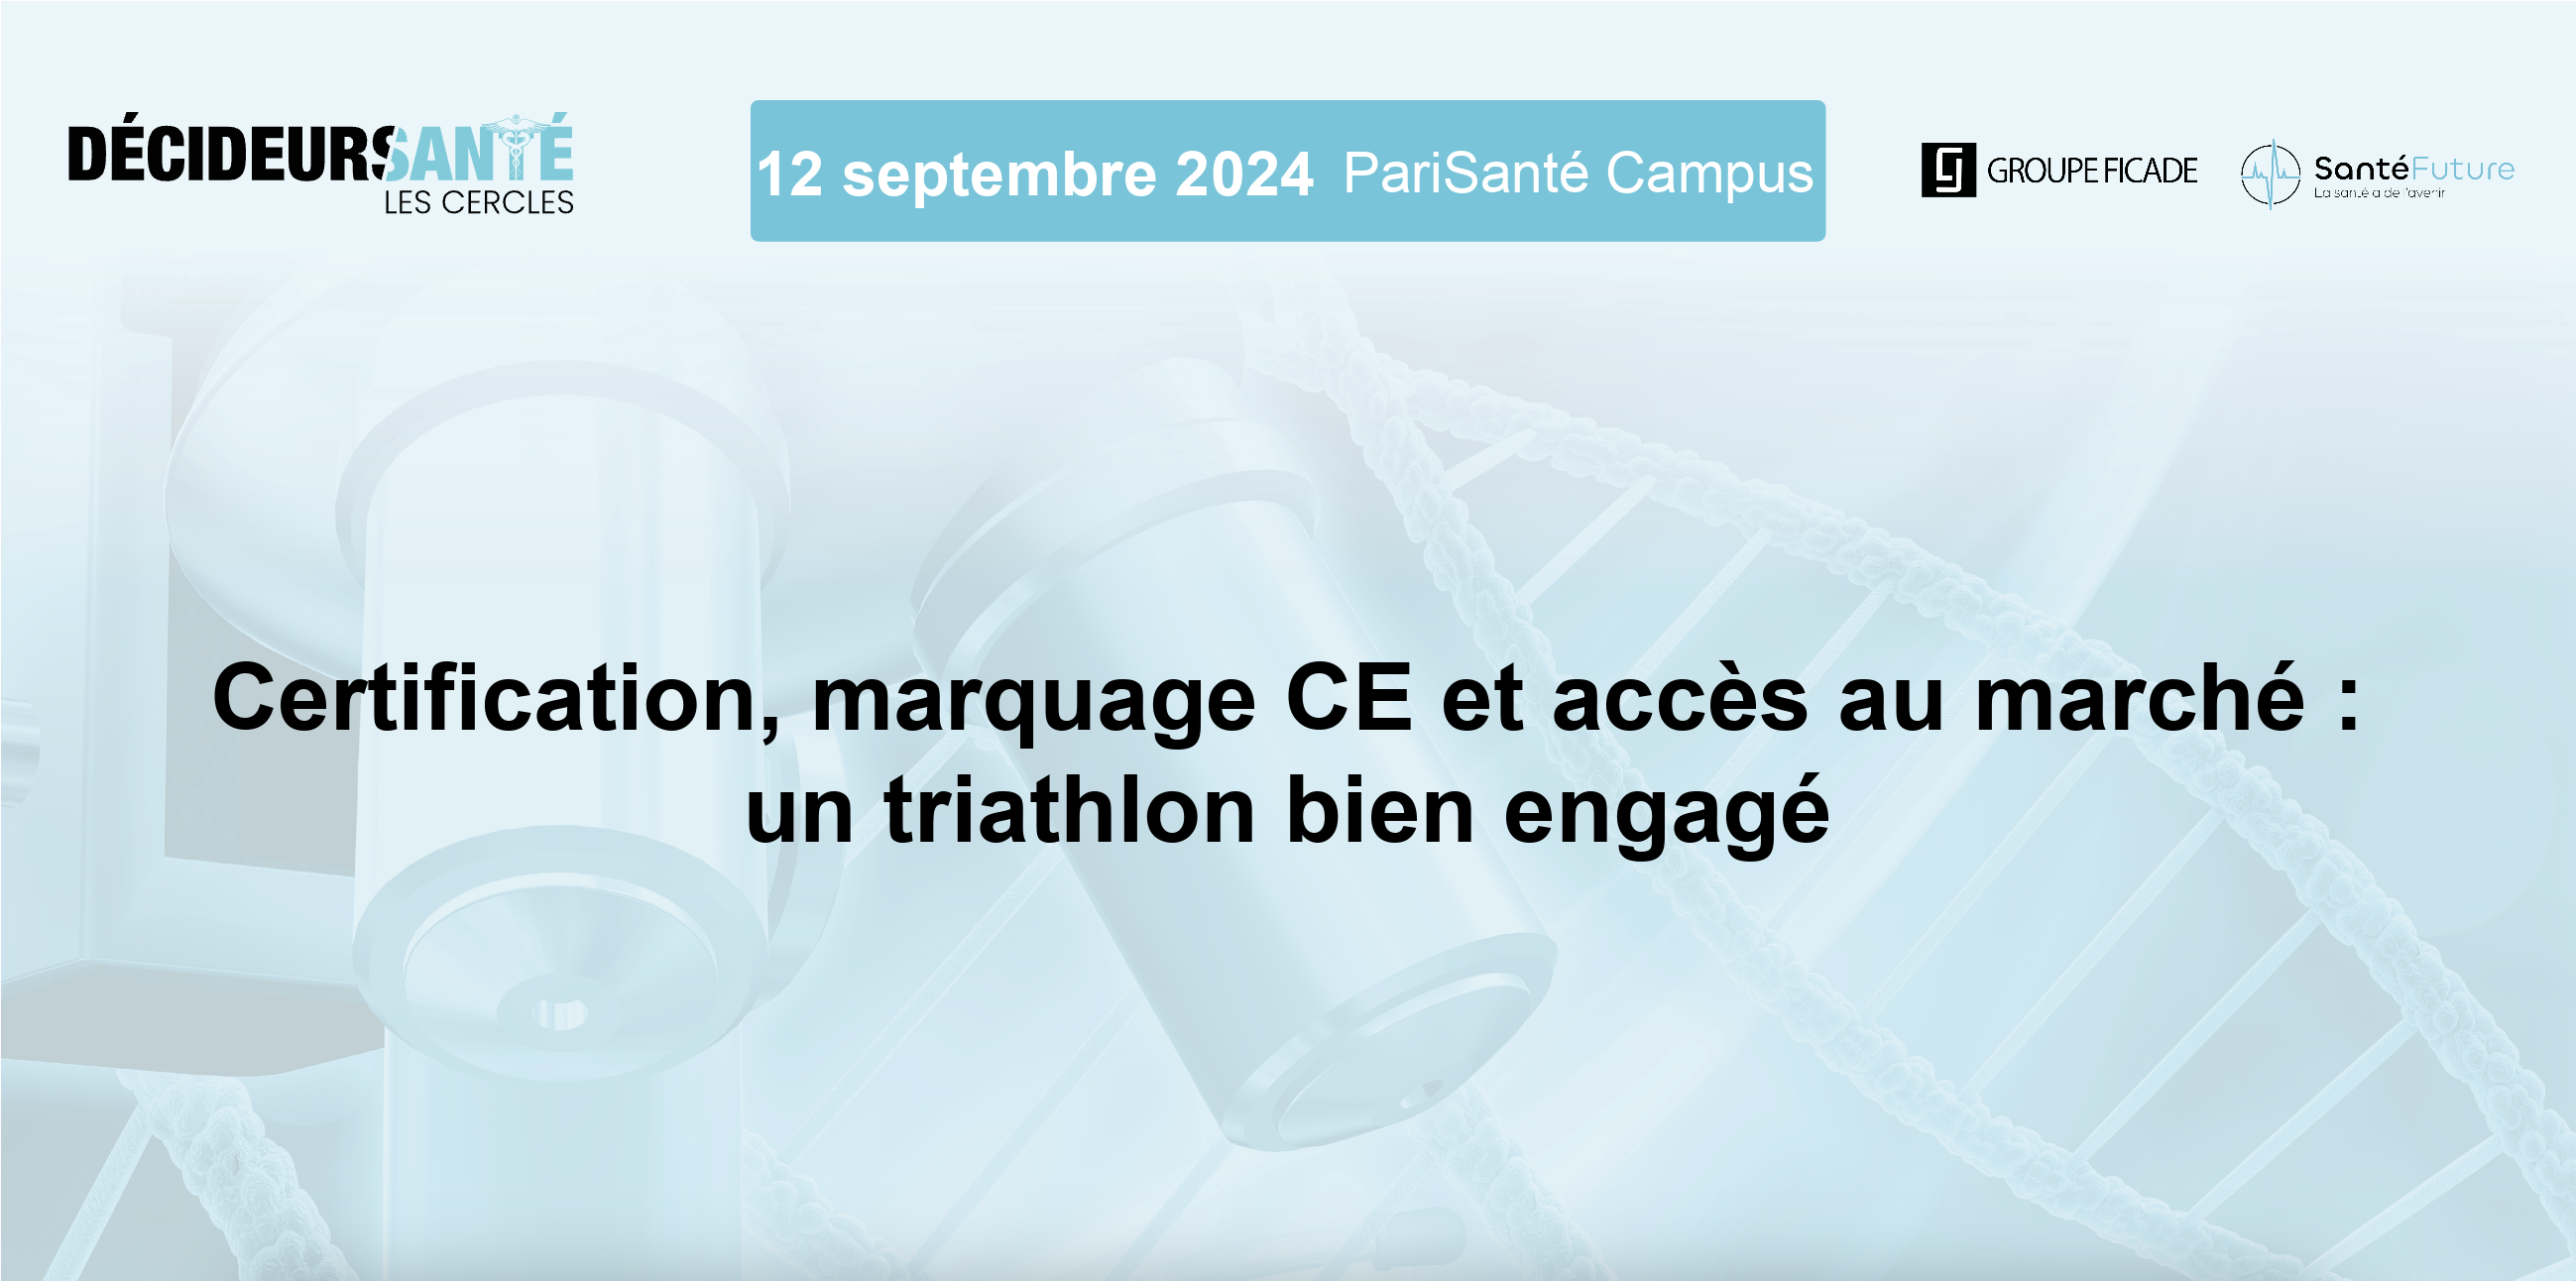 Certification, marquage CE et accès au marché : un triathlon bien engagé